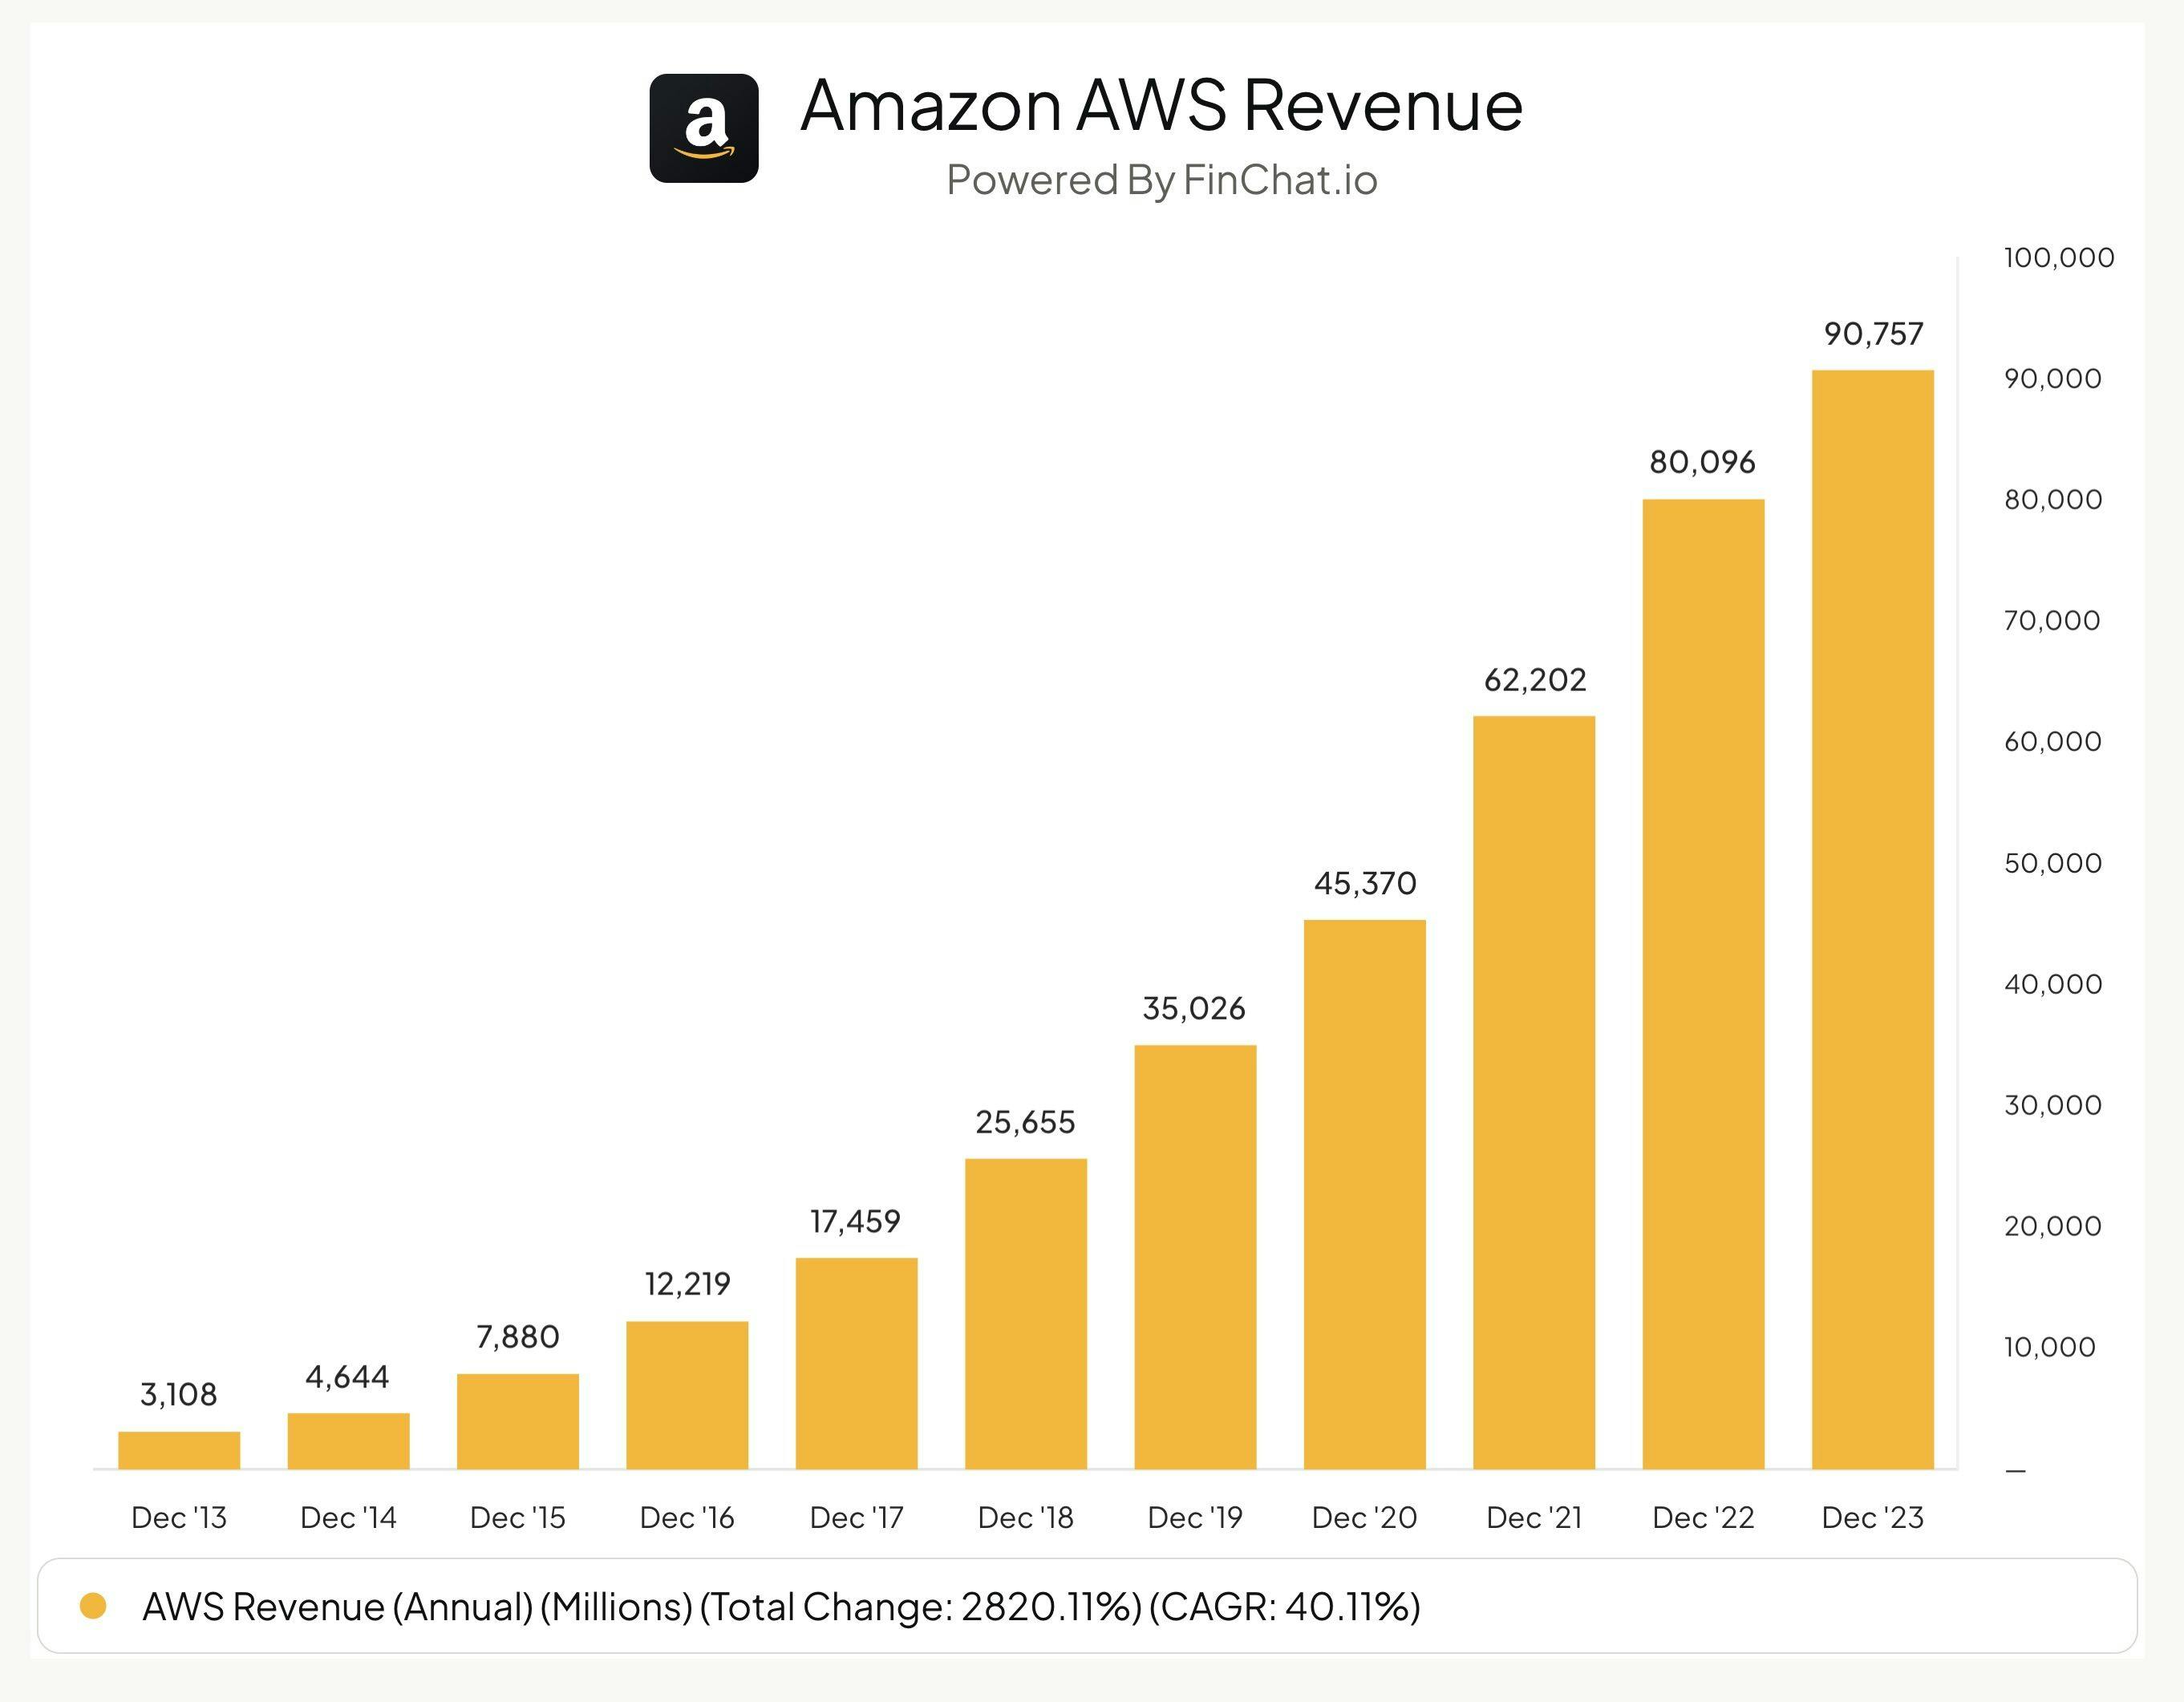 AWS Total Revenue